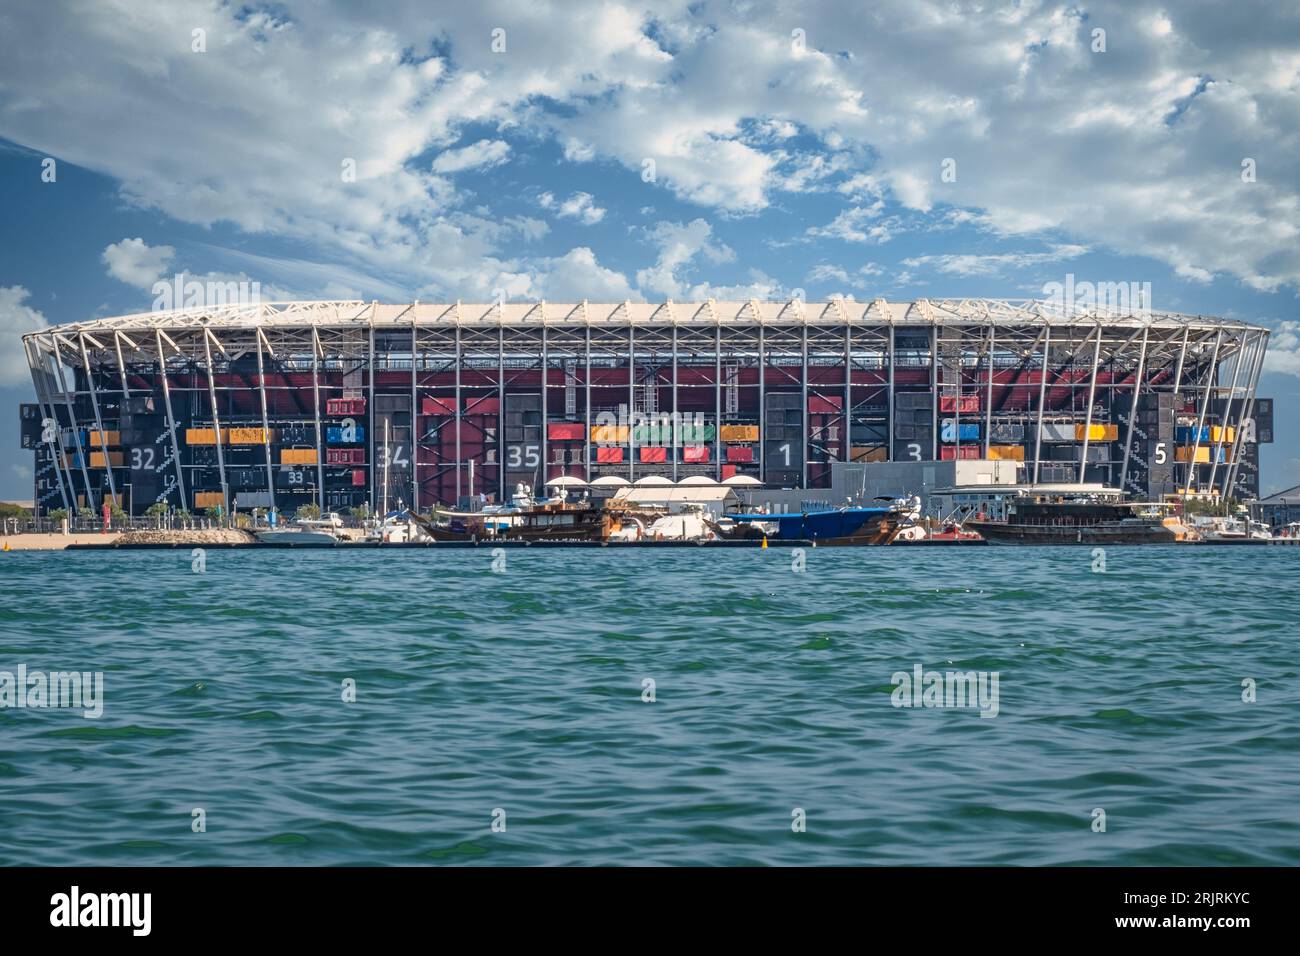 Una foto straordinaria mostra l'iconico stadio di calcio 974 a Doha durante la Coppa del mondo FIFA 2022 in Qatar. Questa splendida arena, una testimonianza dell'innovazione Foto Stock